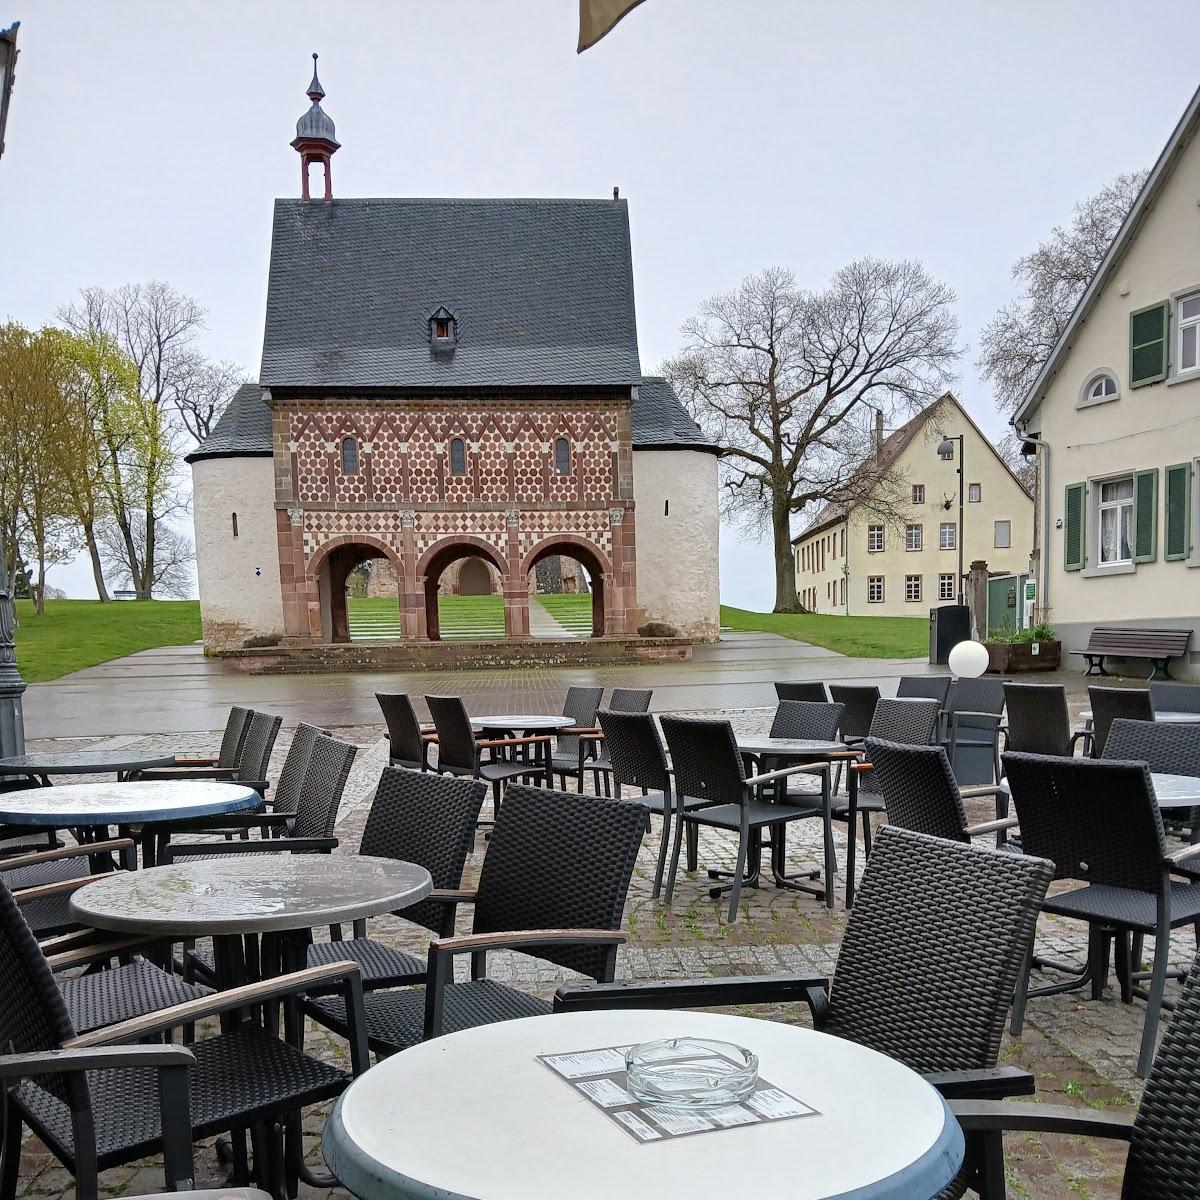 Restaurant "Café am Kloster" in Lorsch